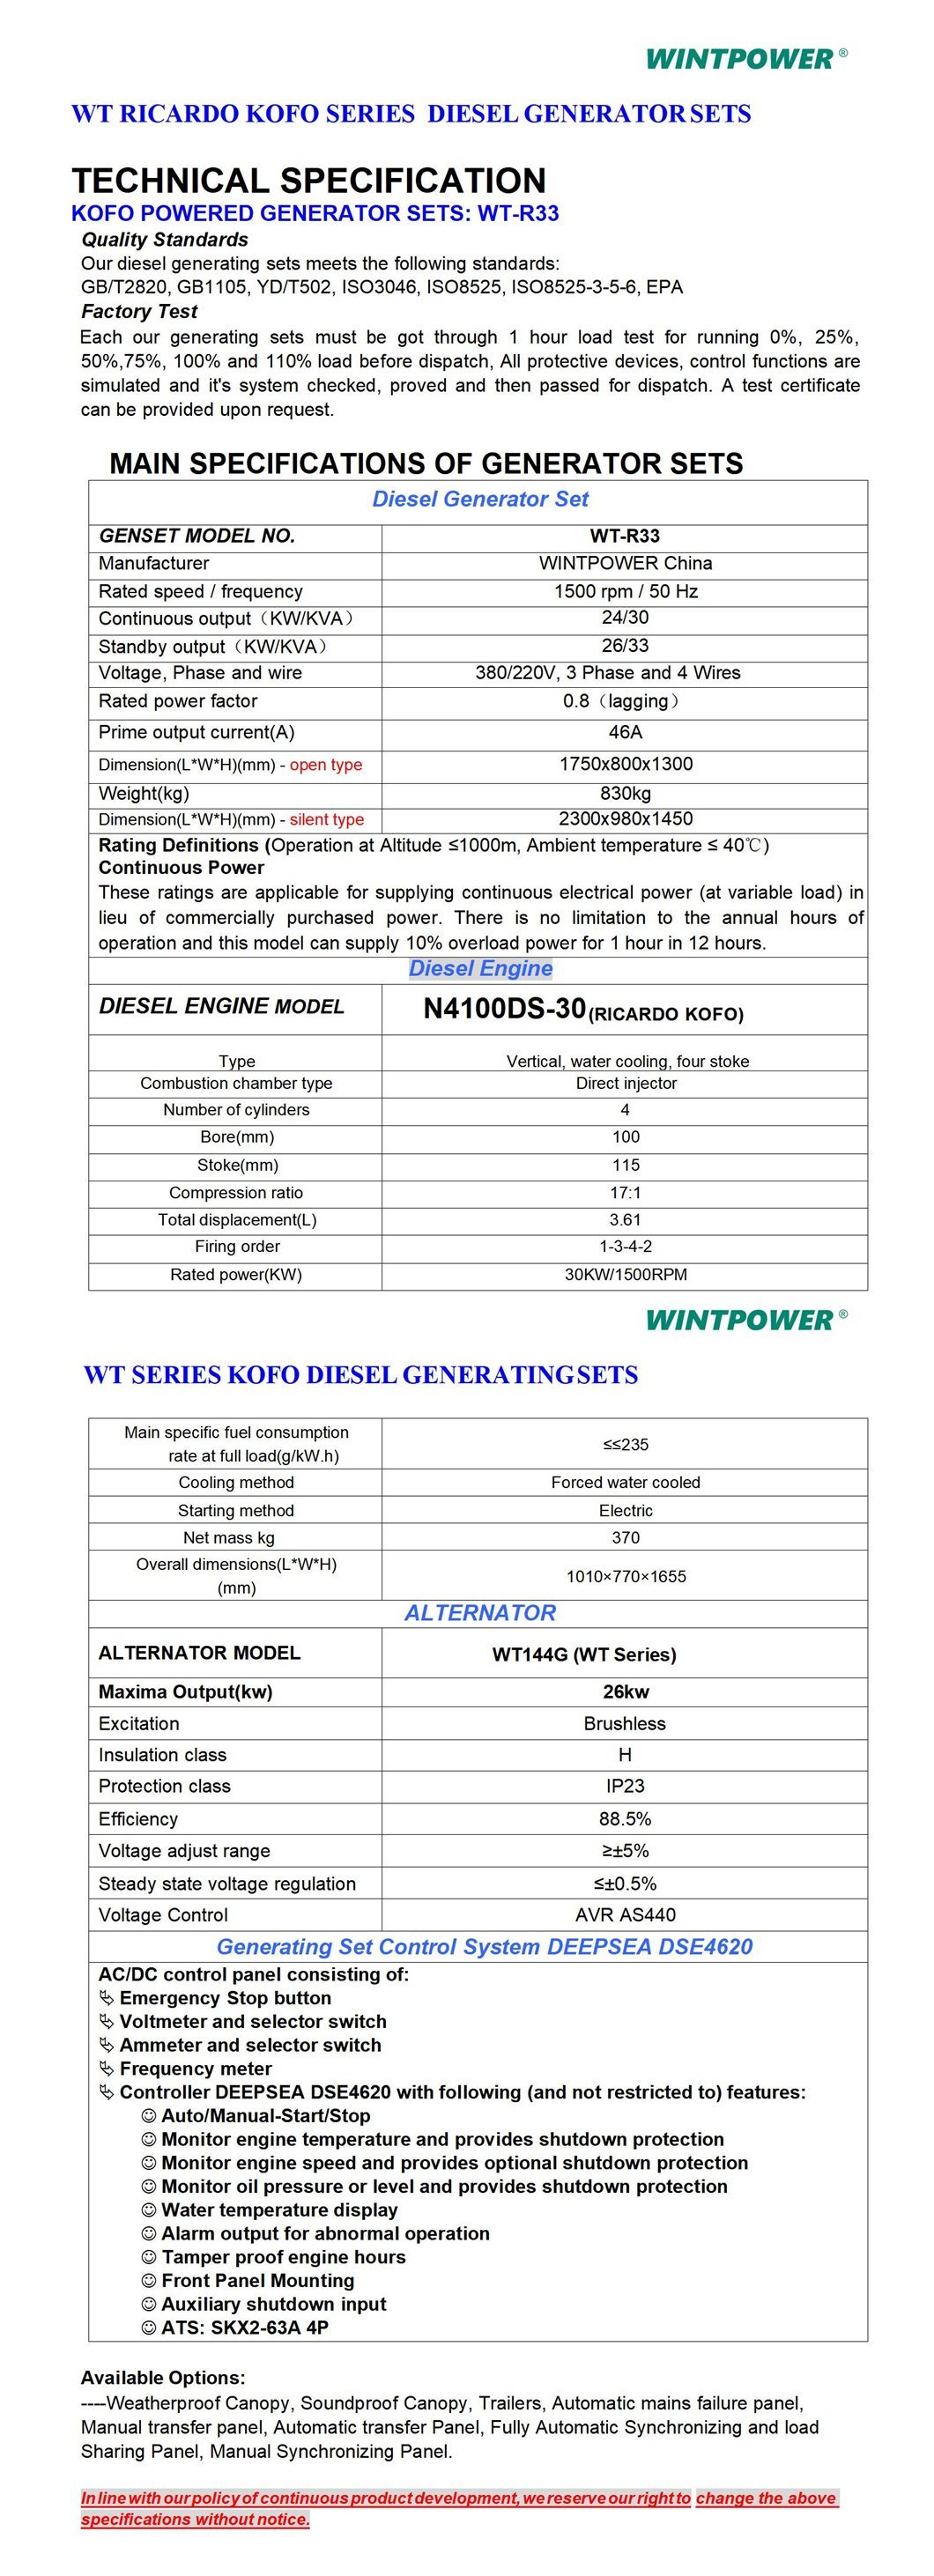 Weichai Kofo Ricardo Motor Diesel Grupo electrógeno Dg Genset 30kVA N4100ds-30 Tipo silencioso insonorizado 400/230V 380/220V 208/110V 440V 480V 600V 50Hz 60Hz